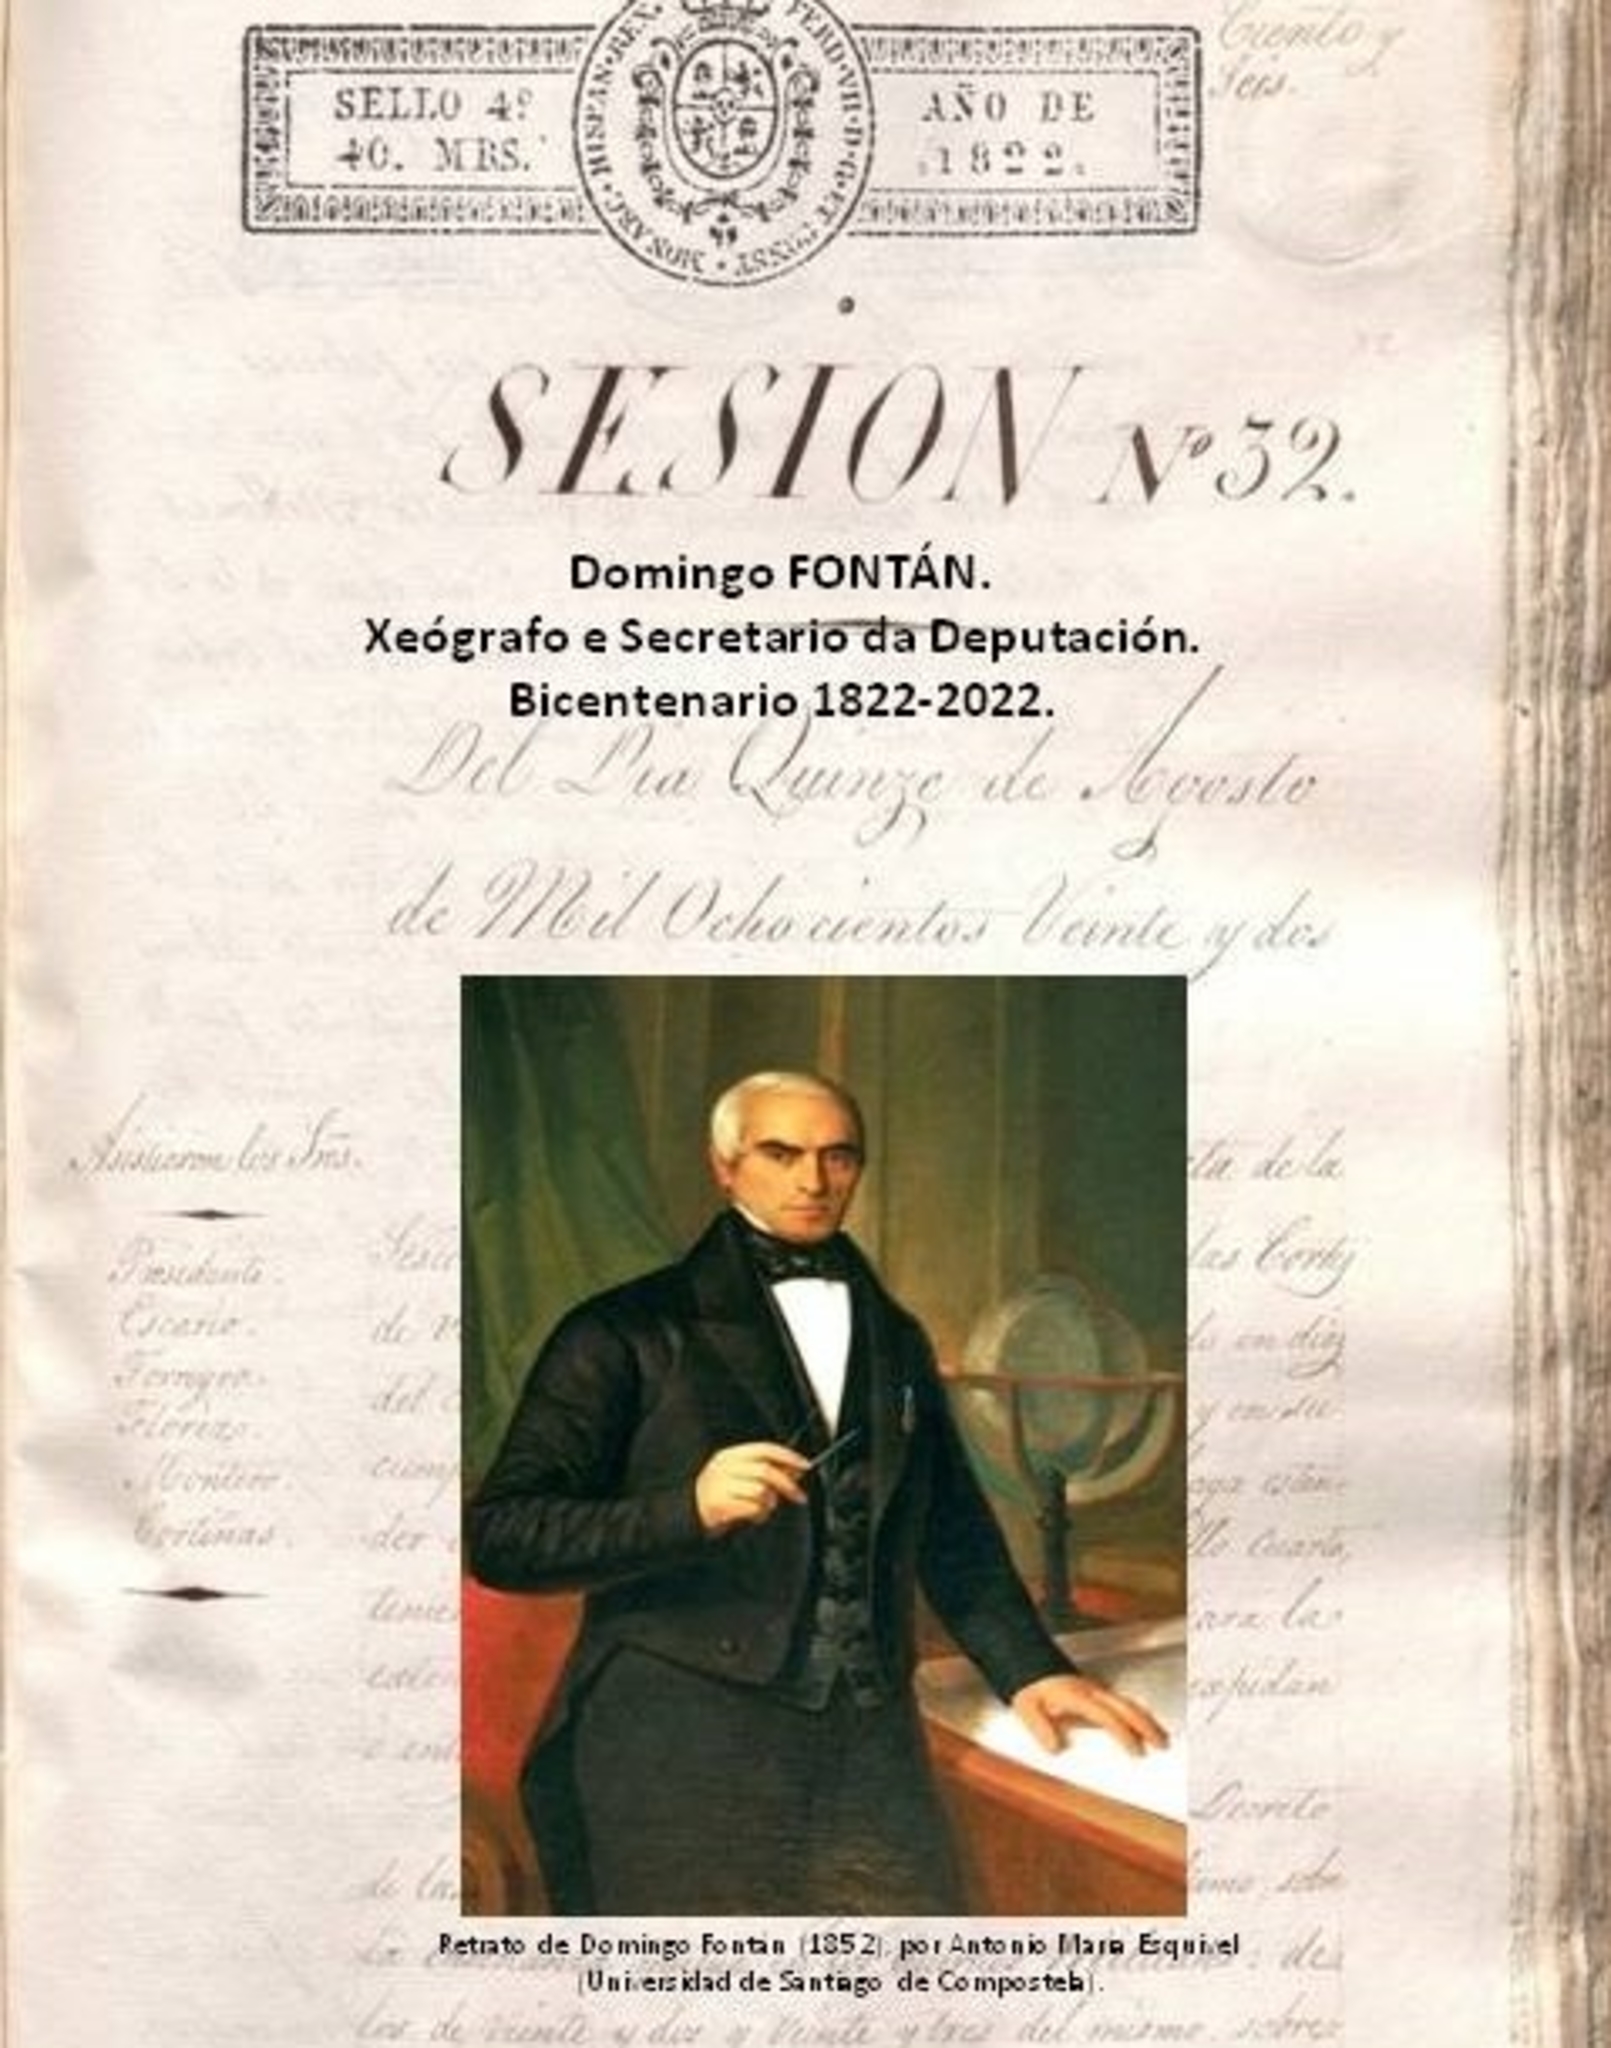 Domingo Fontán. Xeográfo e Secretario da Deputación. Bicentenario 1822-2022